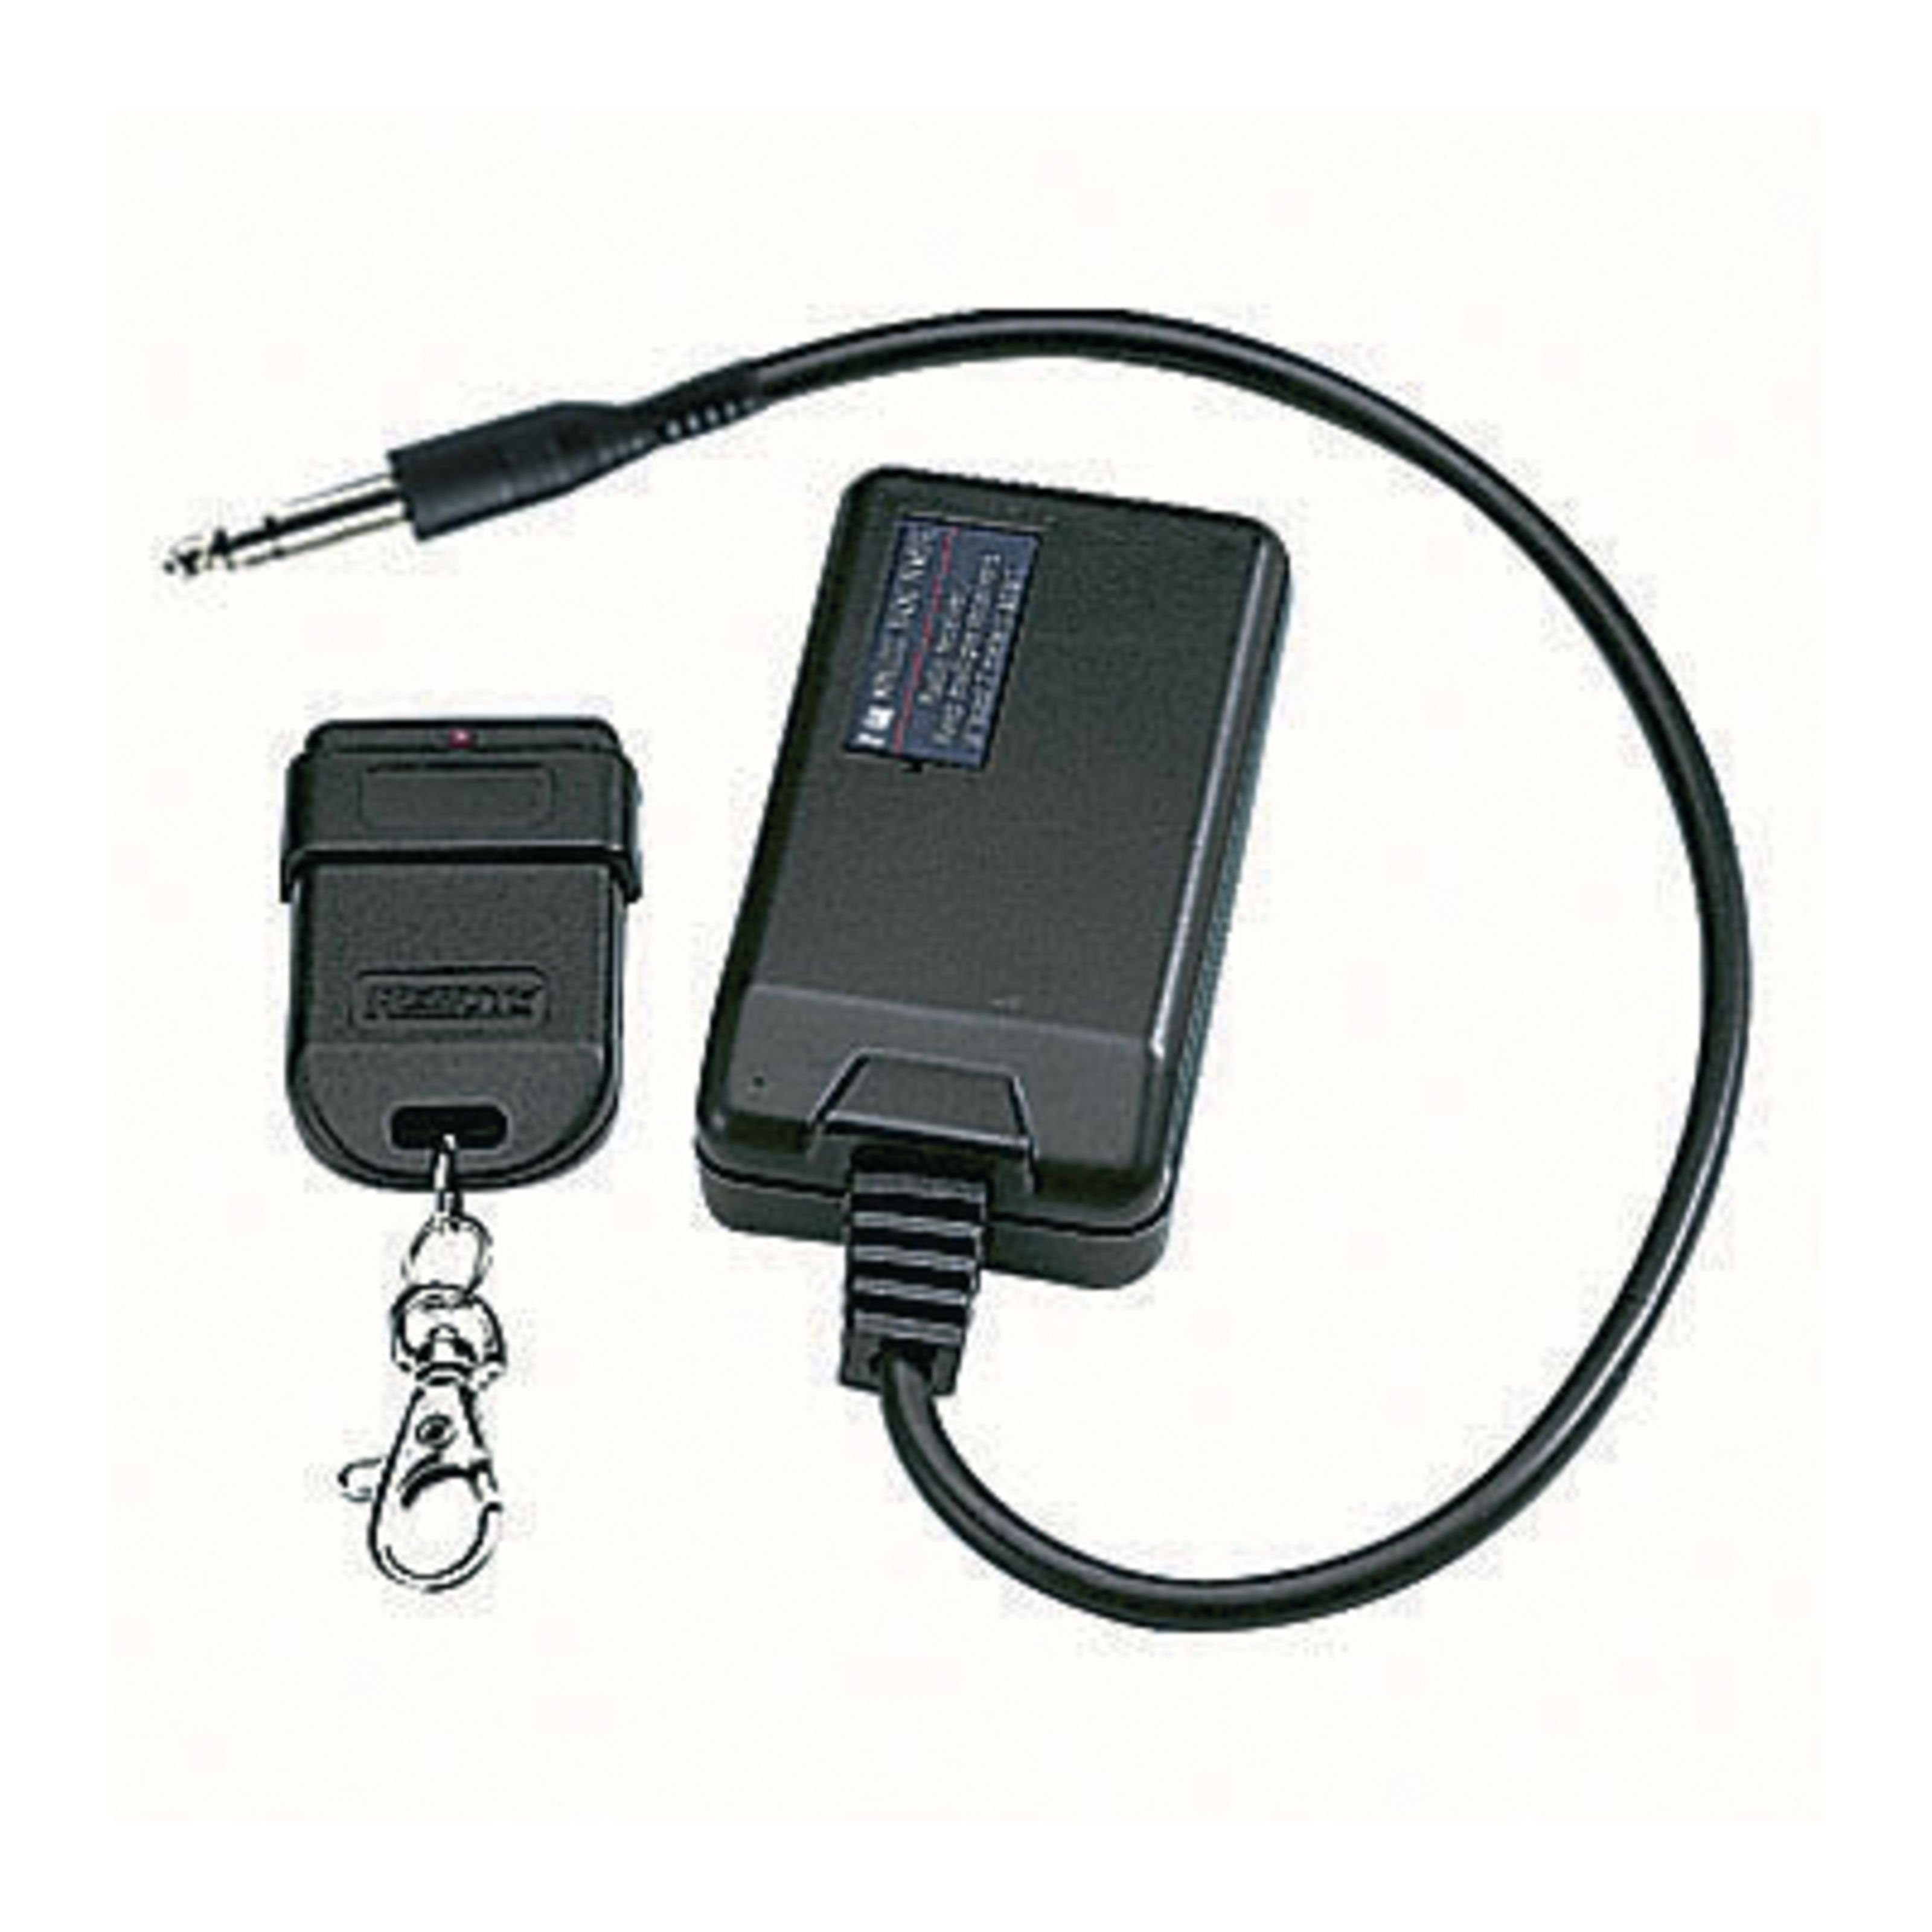 ANTARI Discolicht, Z-50 Wireless Remote Funkfernbedienung - Zubehör für Effektmaschinen